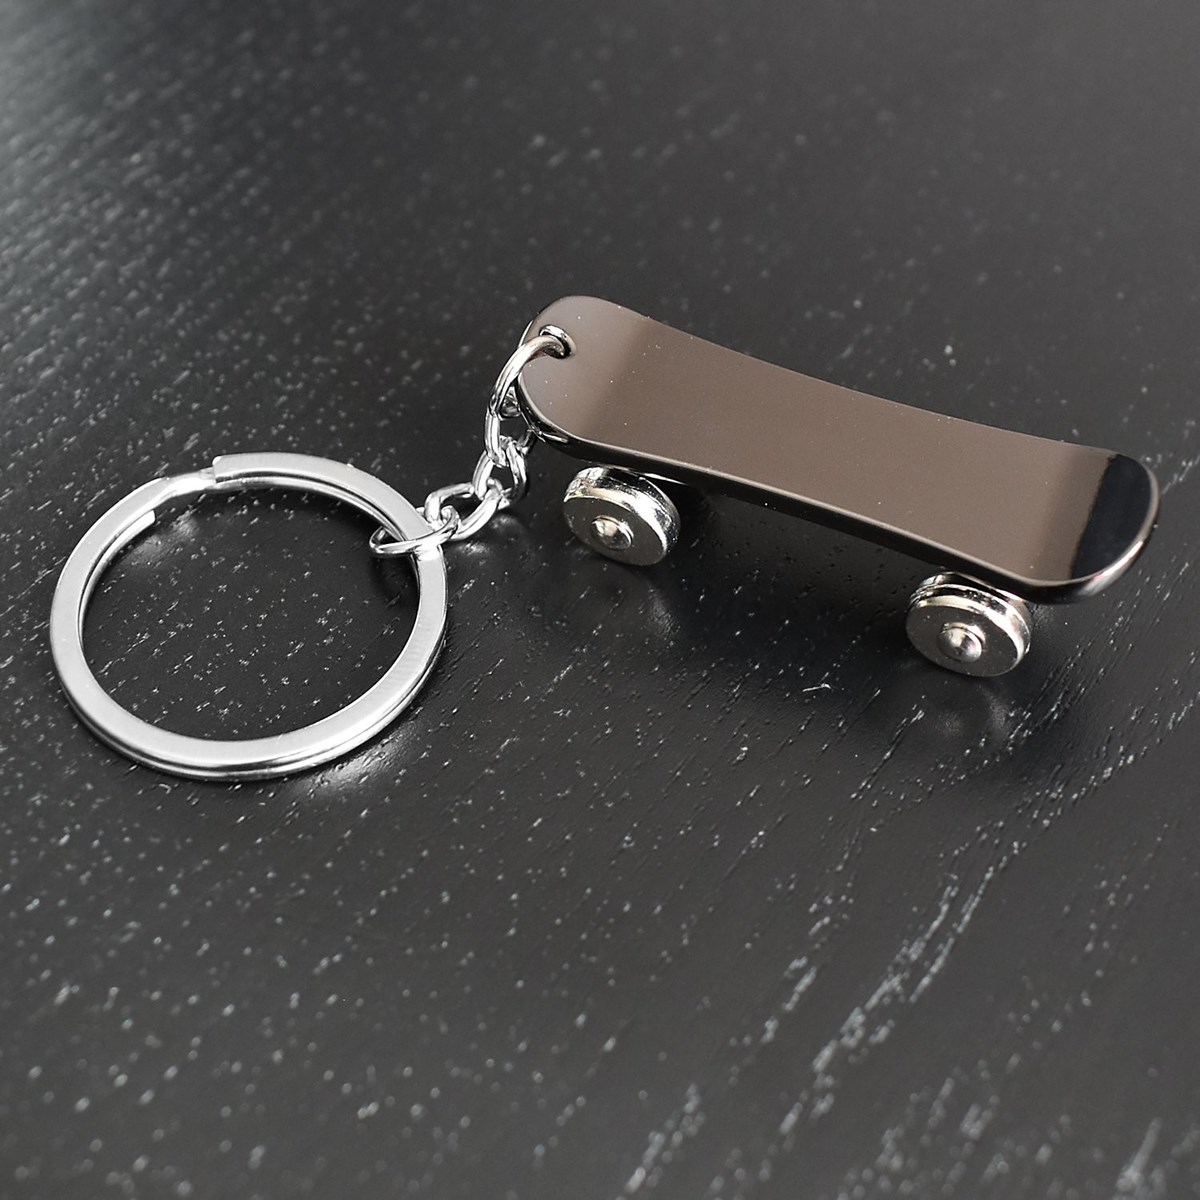 Porte-clés skateboard planche à roulettes à 4 roues noire argenté - vue 4